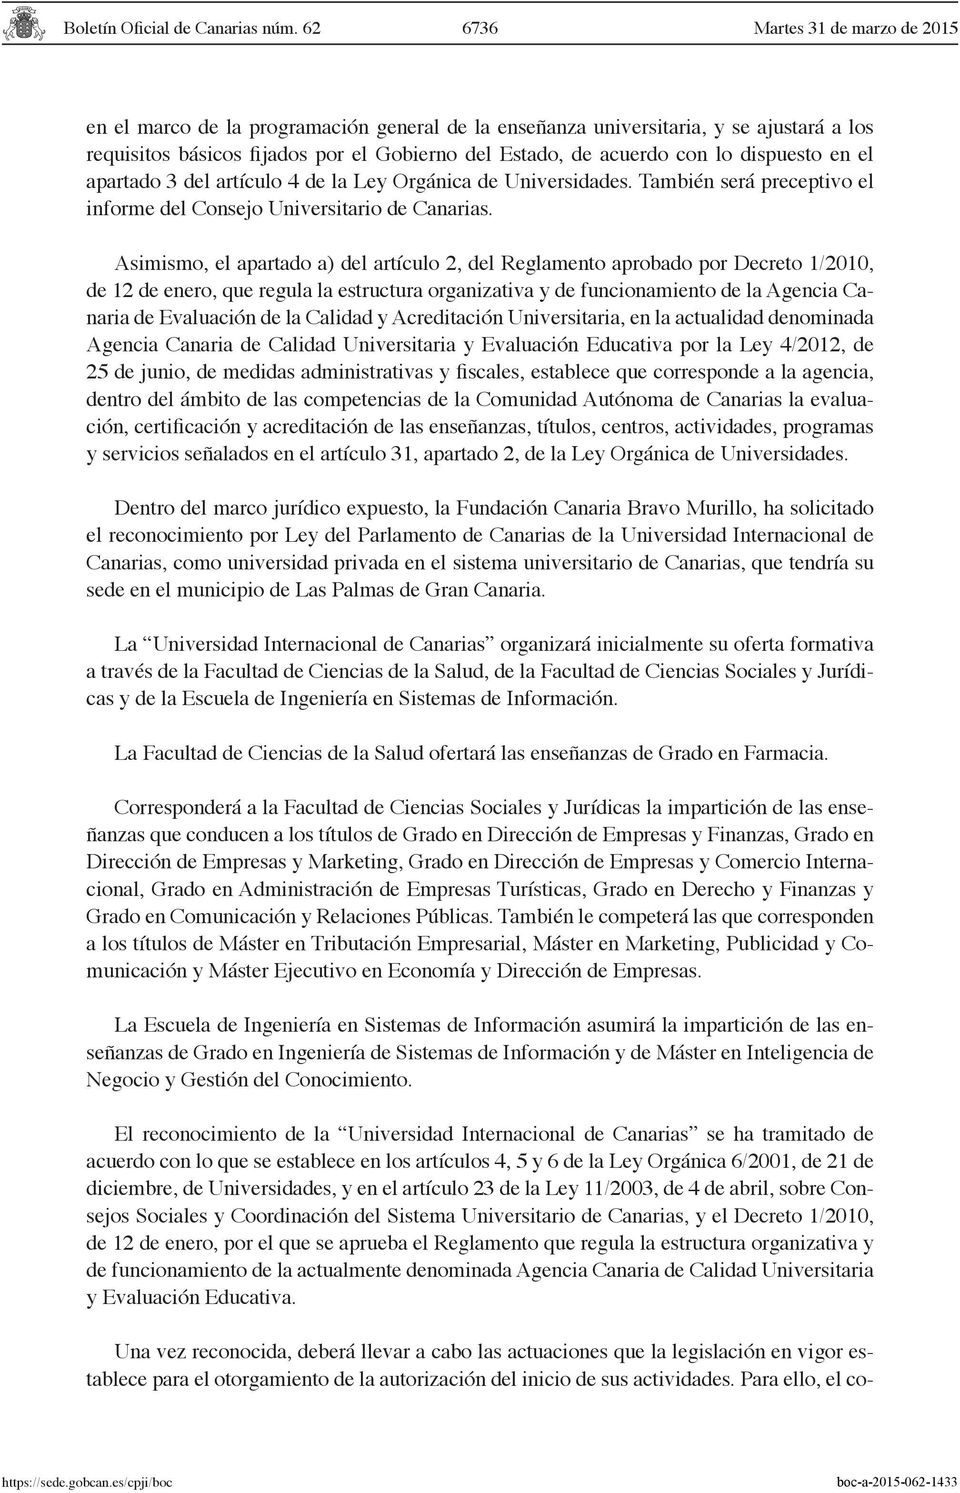 Asimismo, el apartado a) del artículo 2, del Reglamento aprobado por Decreto 1/2010, de 12 de enero, que regula la estructura organizativa y de funcionamiento de la Agencia Canaria de Evaluación de